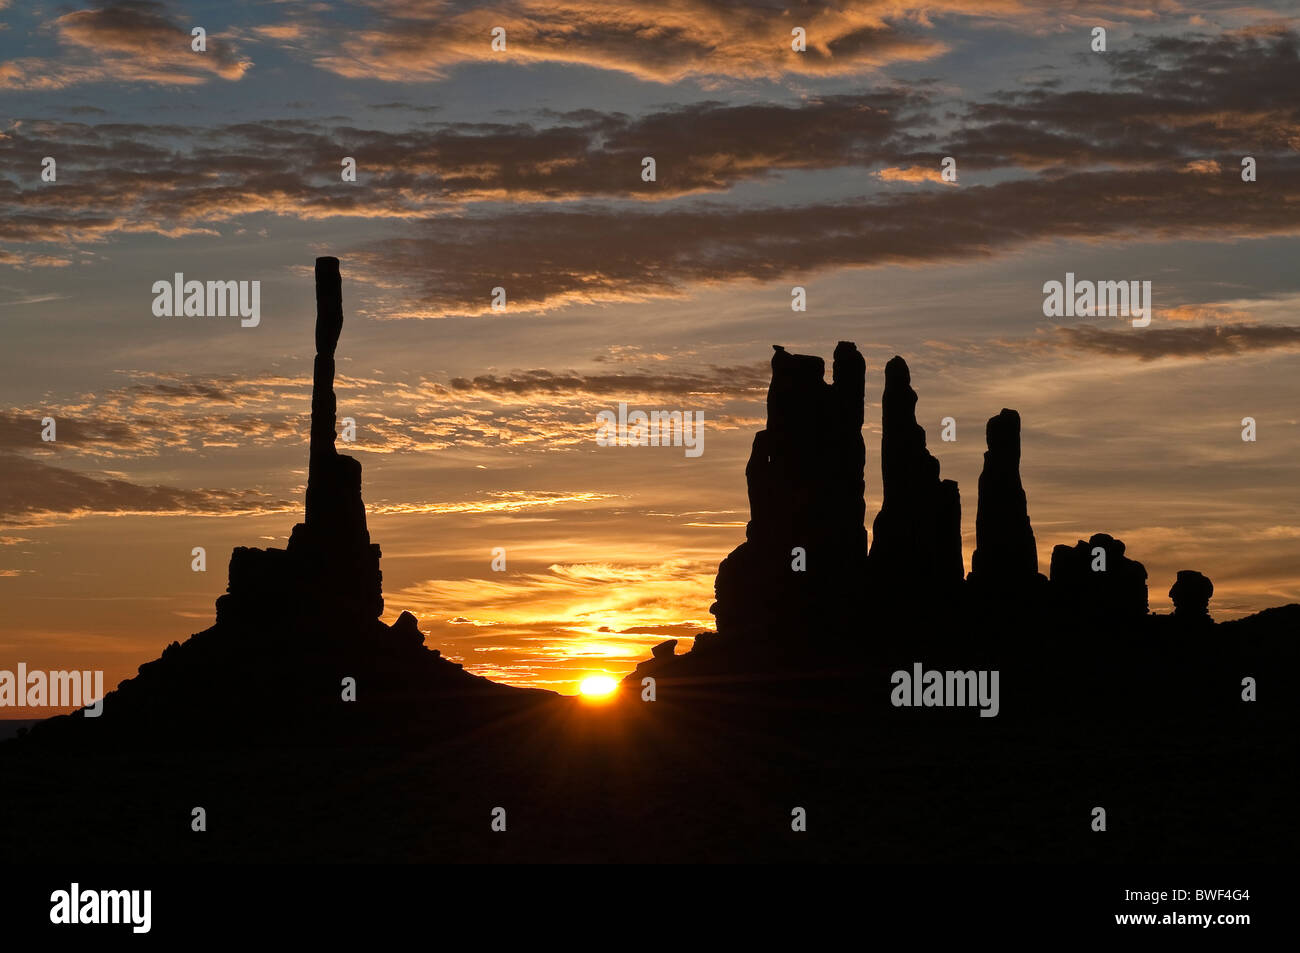 Sonnenaufgang mit Totempfahl Felsformation bei Gegenlicht, Monument Valley, Arizona, USA Stockfoto